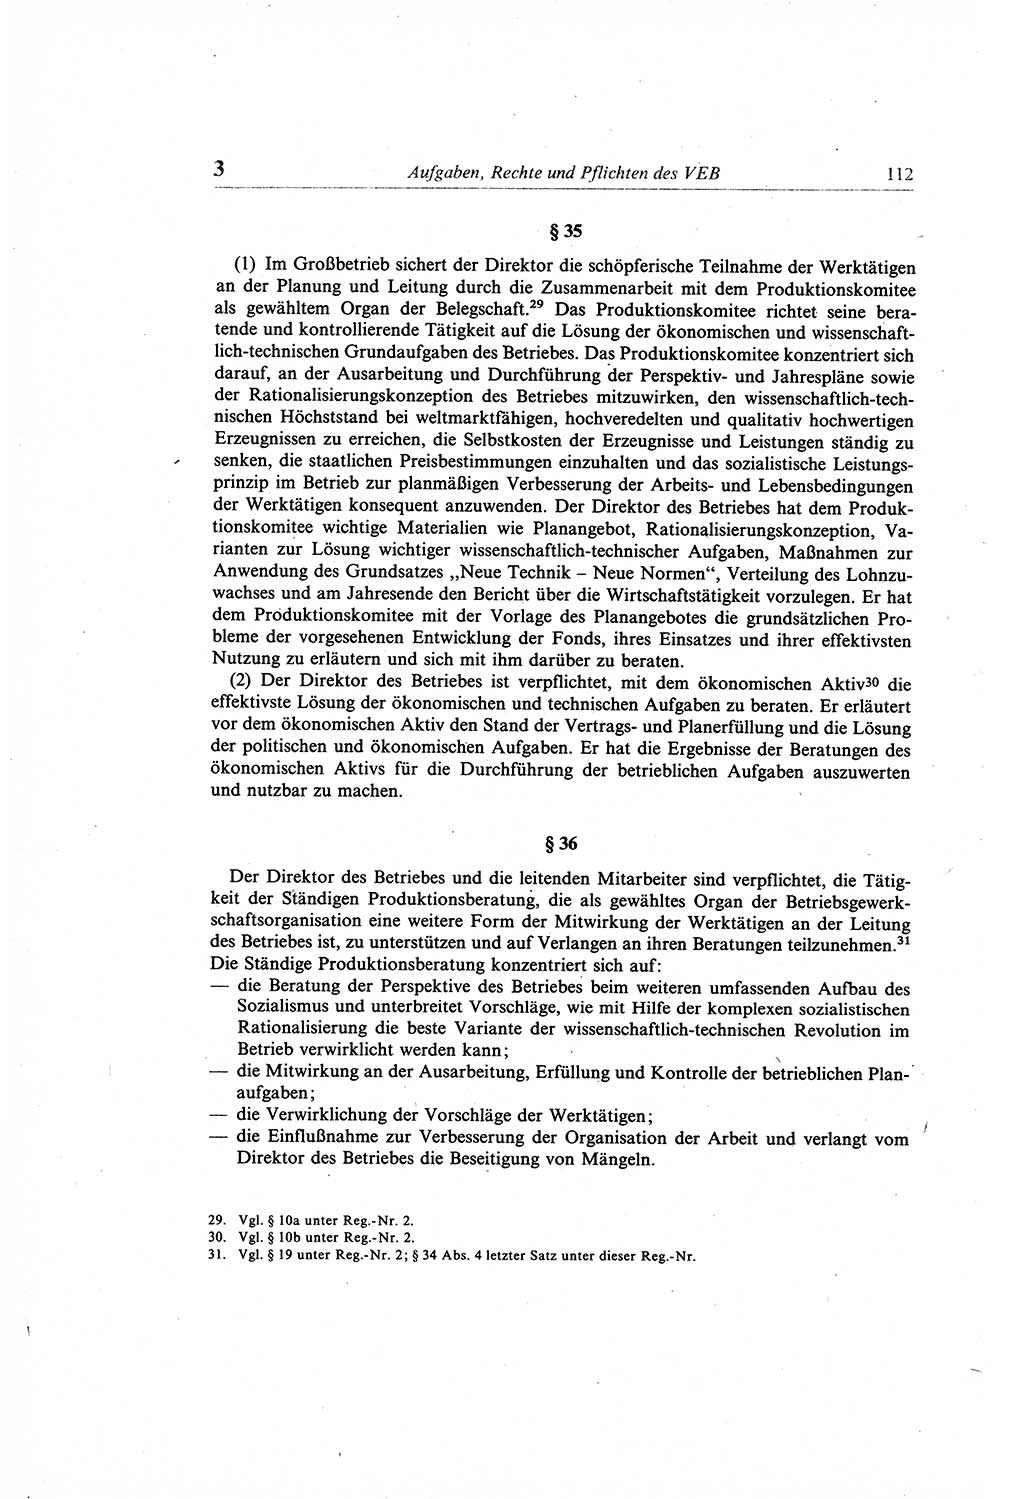 Gesetzbuch der Arbeit (GBA) und andere ausgewählte rechtliche Bestimmungen [Deutsche Demokratische Republik (DDR)] 1968, Seite 112 (GBA DDR 1968, S. 112)